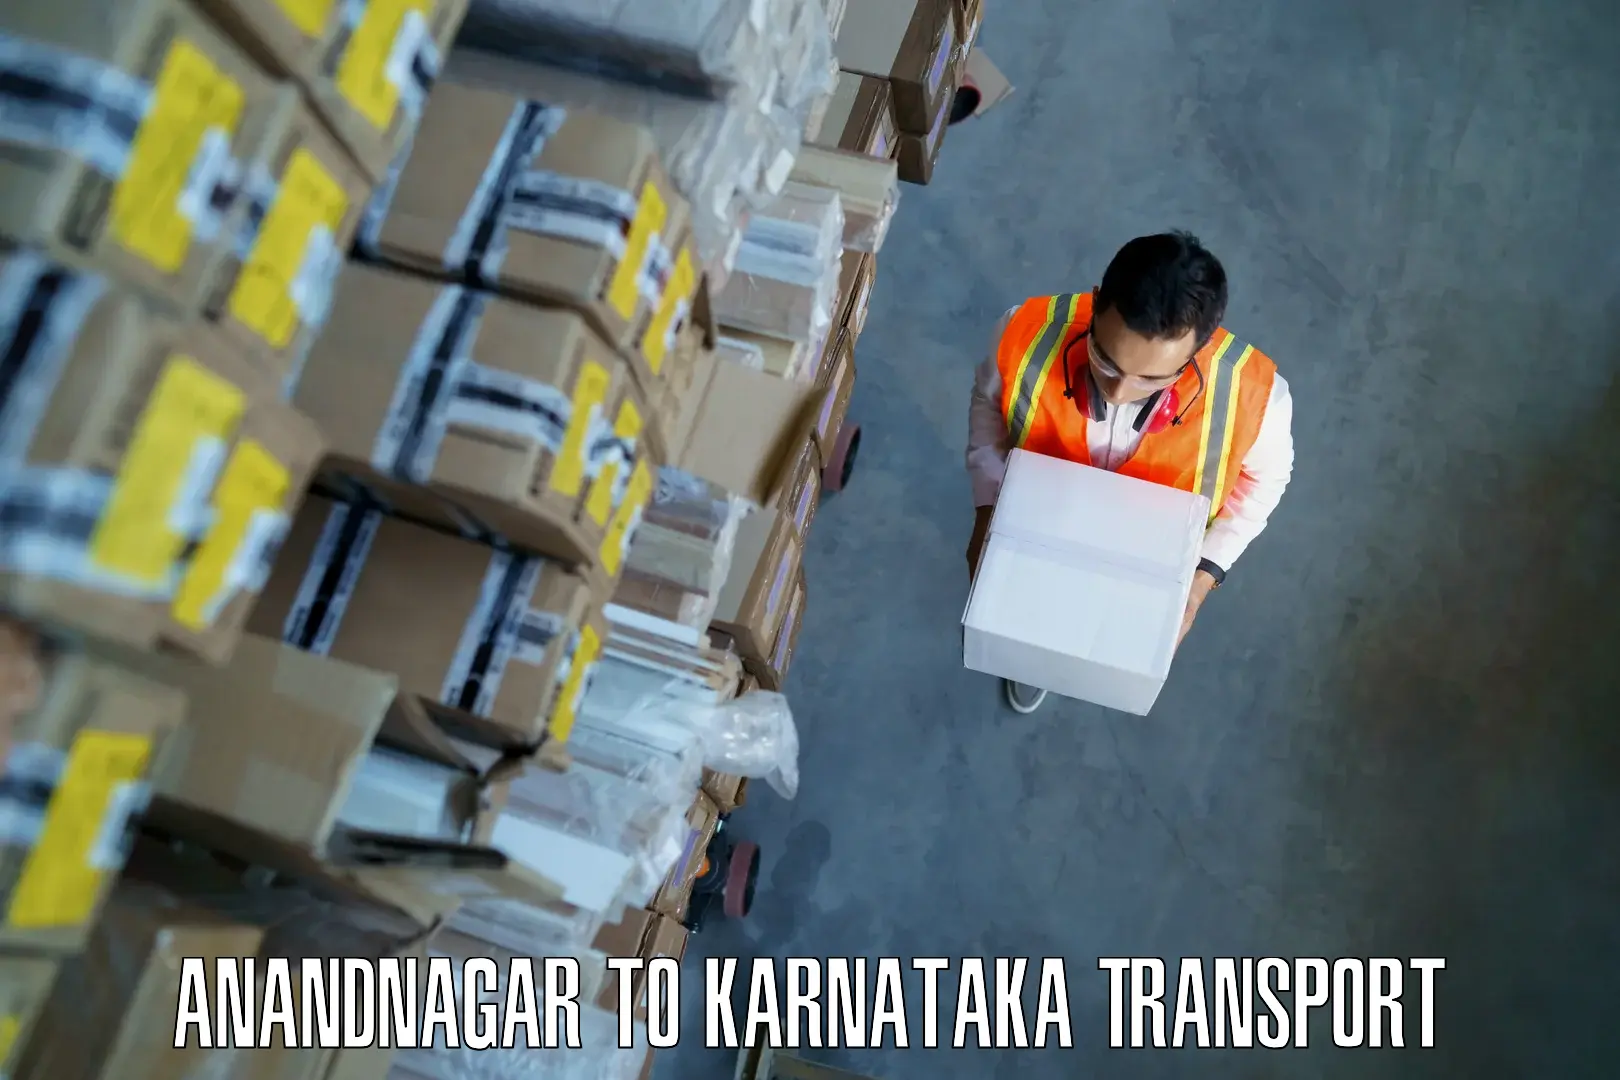 Cargo transportation services in Anandnagar to Kulshekar